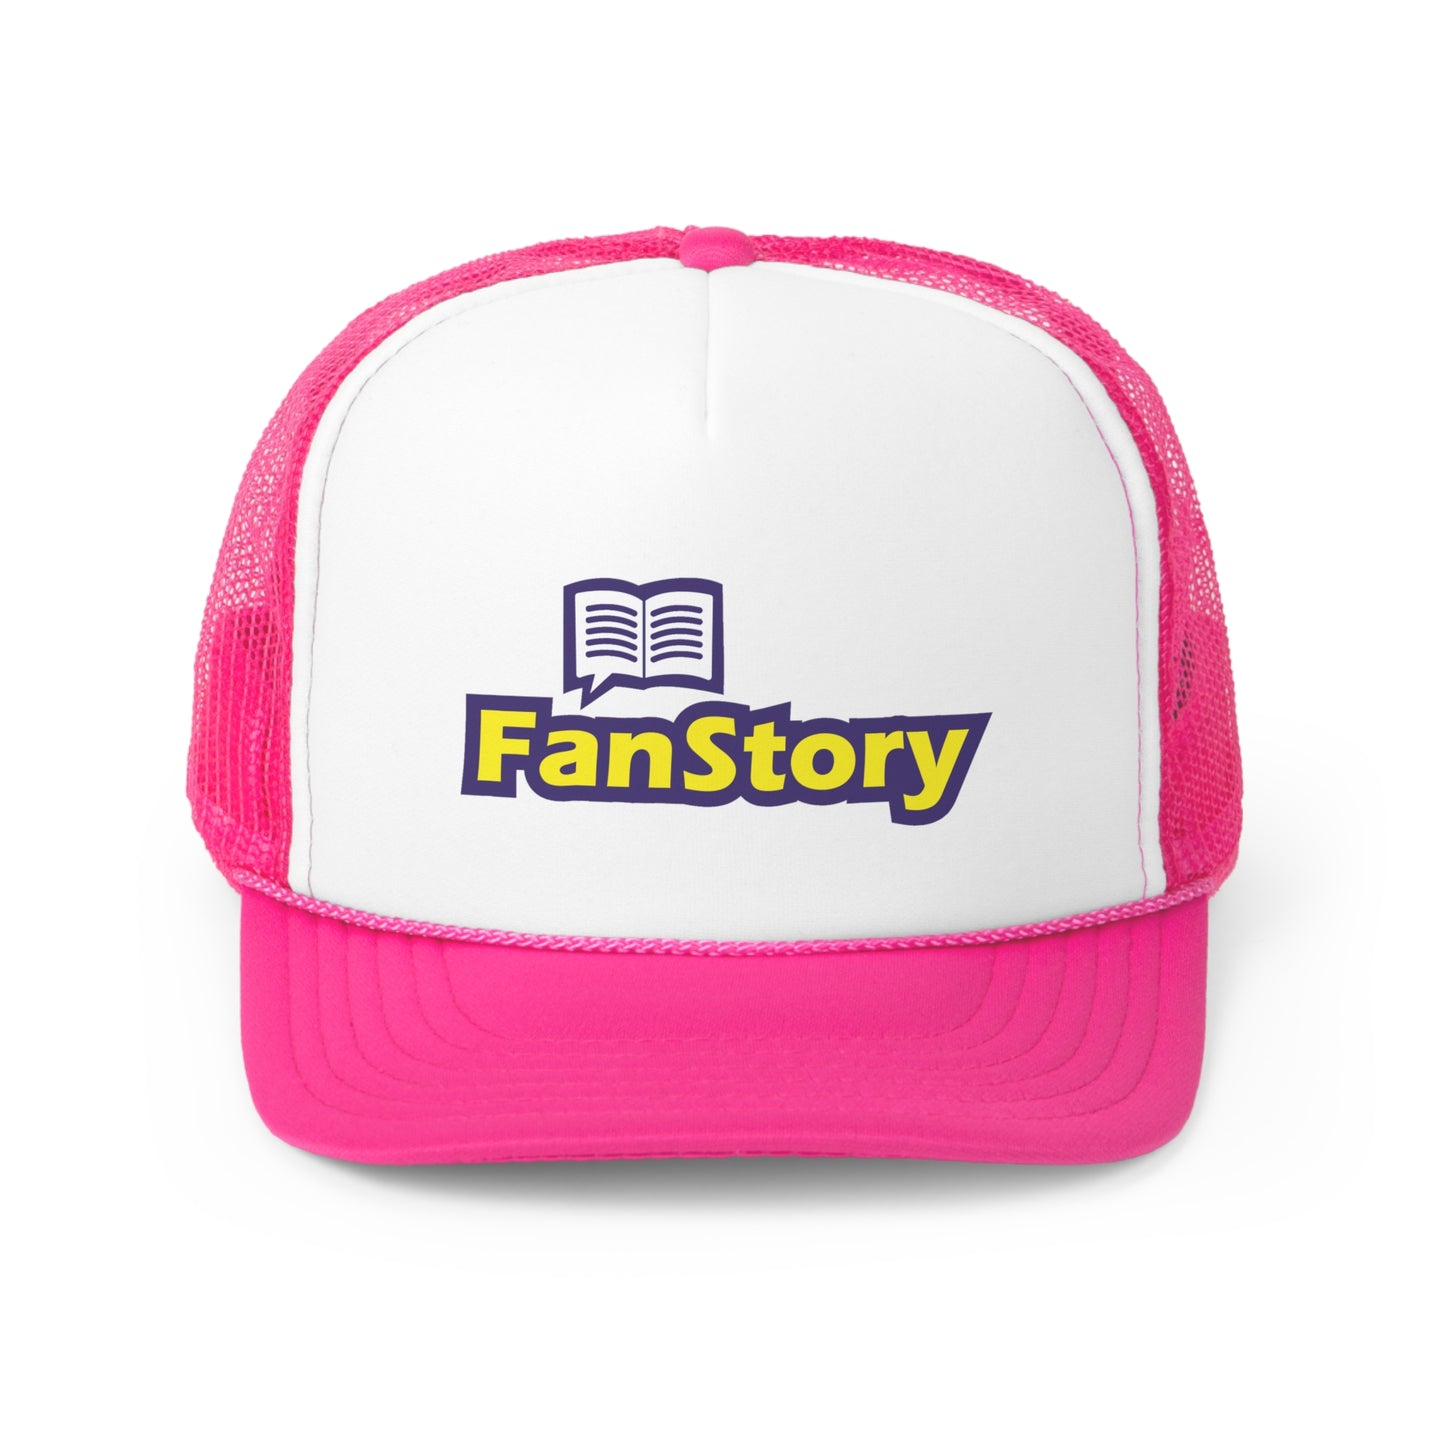 FanStory Trucker Cap